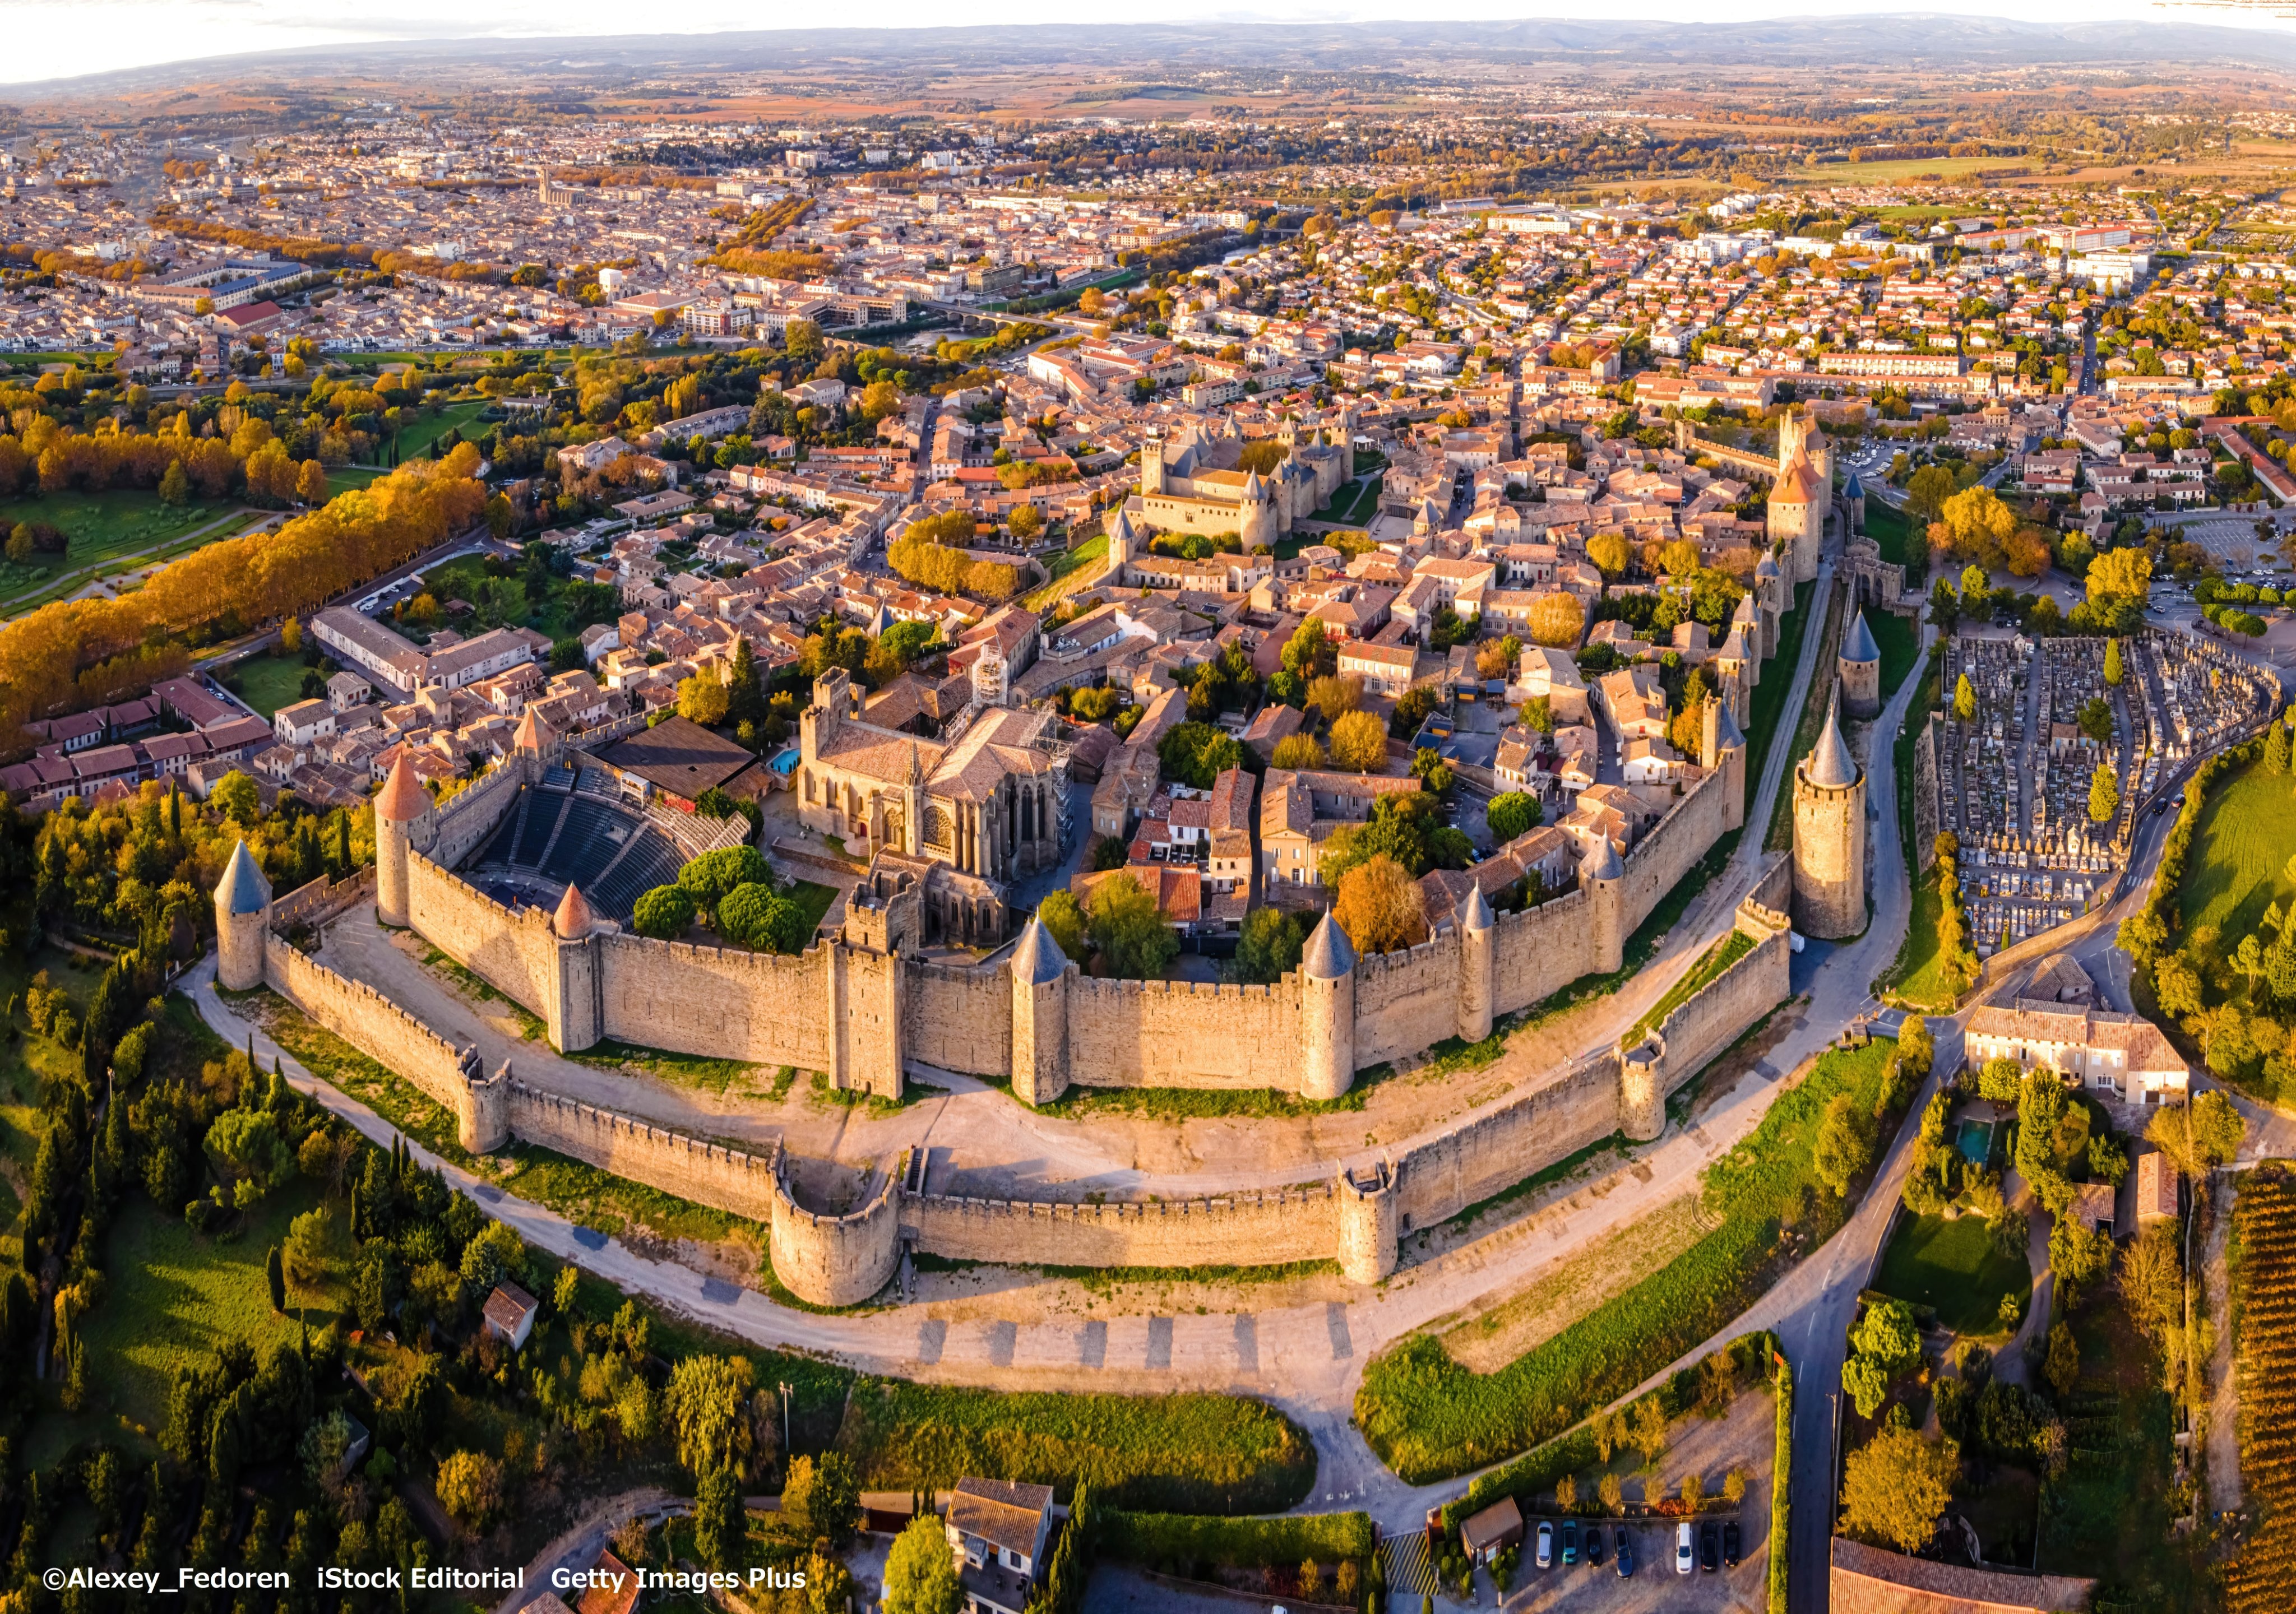 フランス観光局 カルカッソンヌの城塞都市 古代ローマ時代以前から丘の上に要塞が築かれていたカルカッソンヌ 大がかりな防衛システムを備えた中世城塞都市の様子が分かります 城壁は城とその母屋 街路 美しいゴシック様式の大聖堂を取り囲んでい